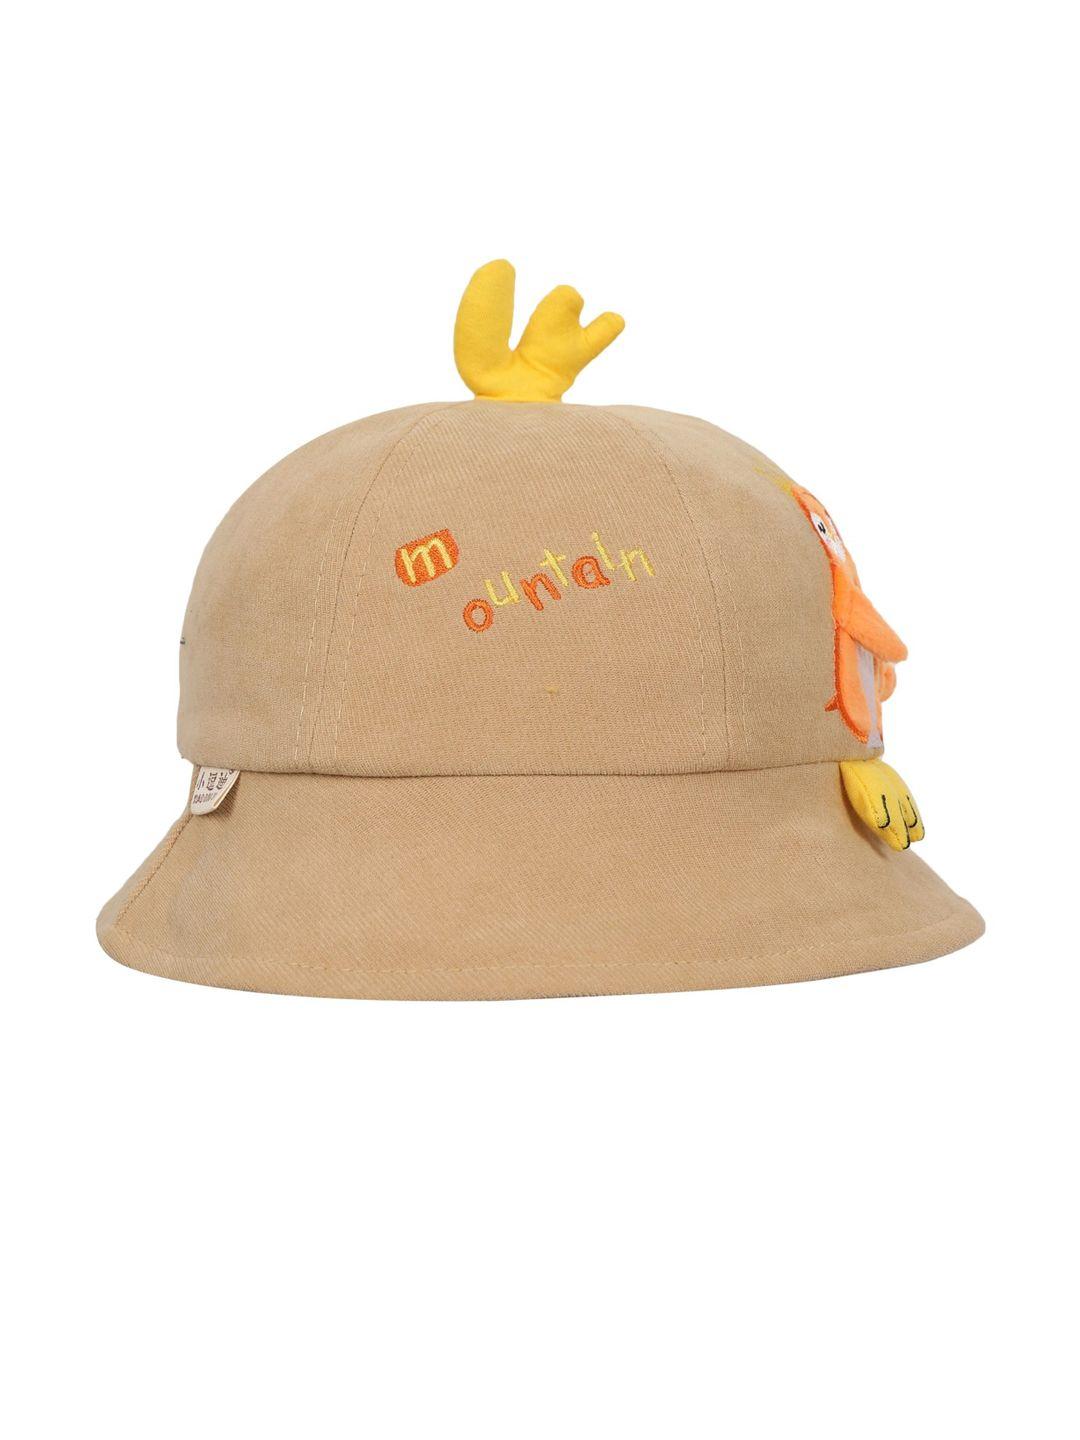 fabseasons unisex kids brown & orange visor cap